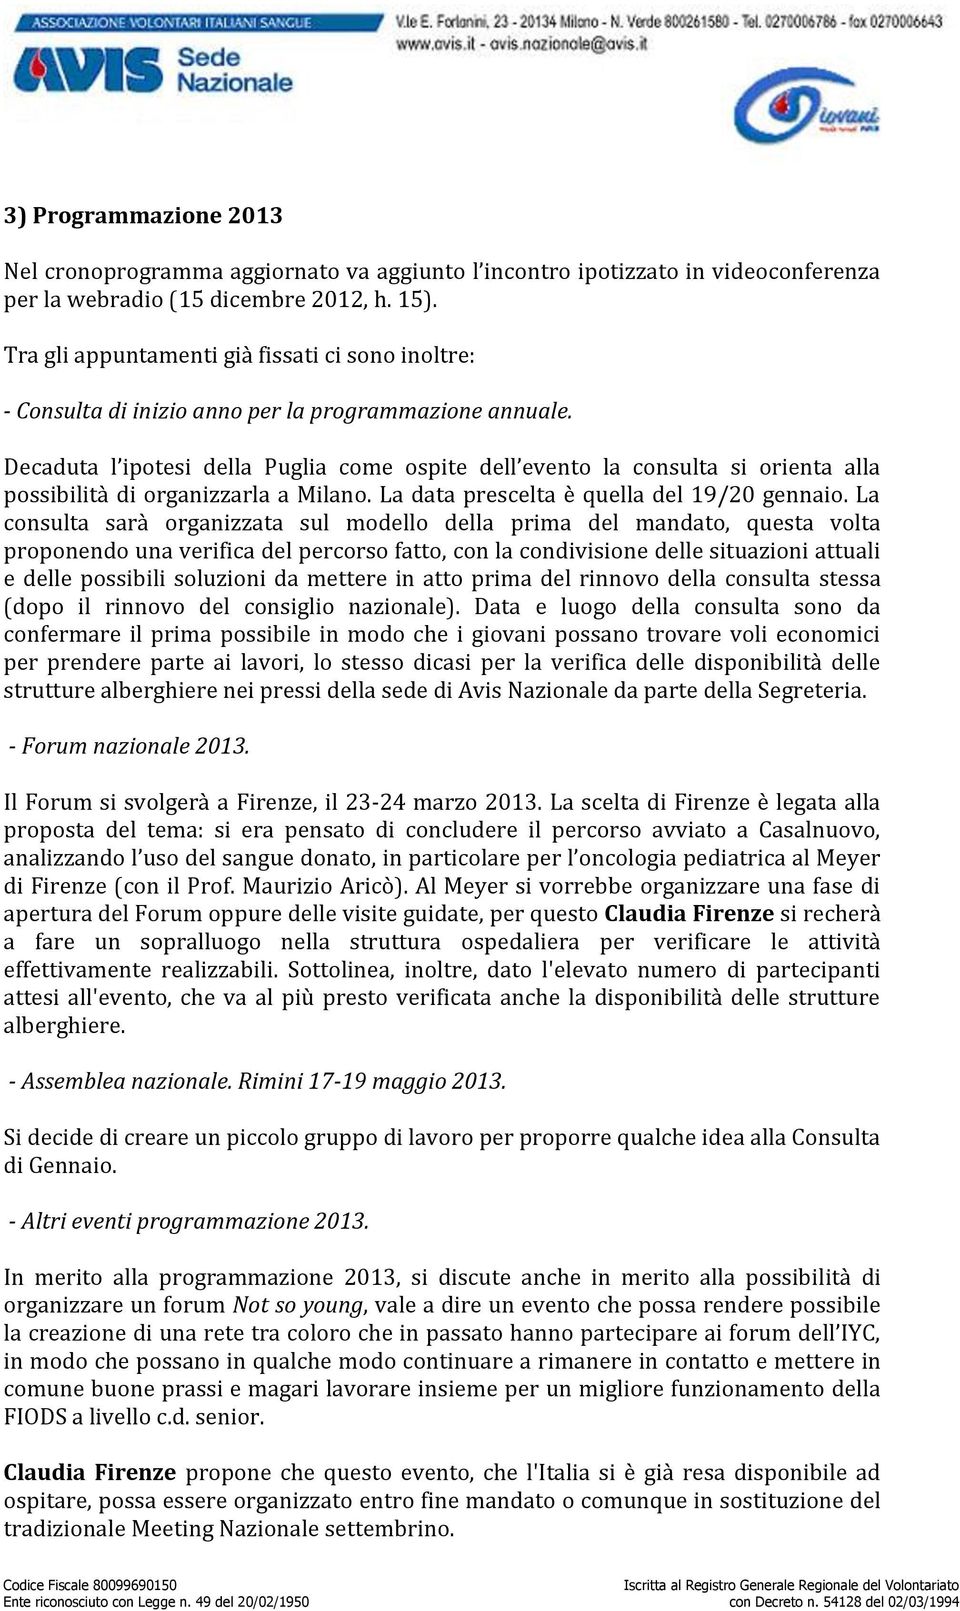 Decaduta l ipotesi della Puglia come ospite dell evento la consulta si orienta alla possibilità di organizzarla a Milano. La data prescelta è quella del 19/20 gennaio.